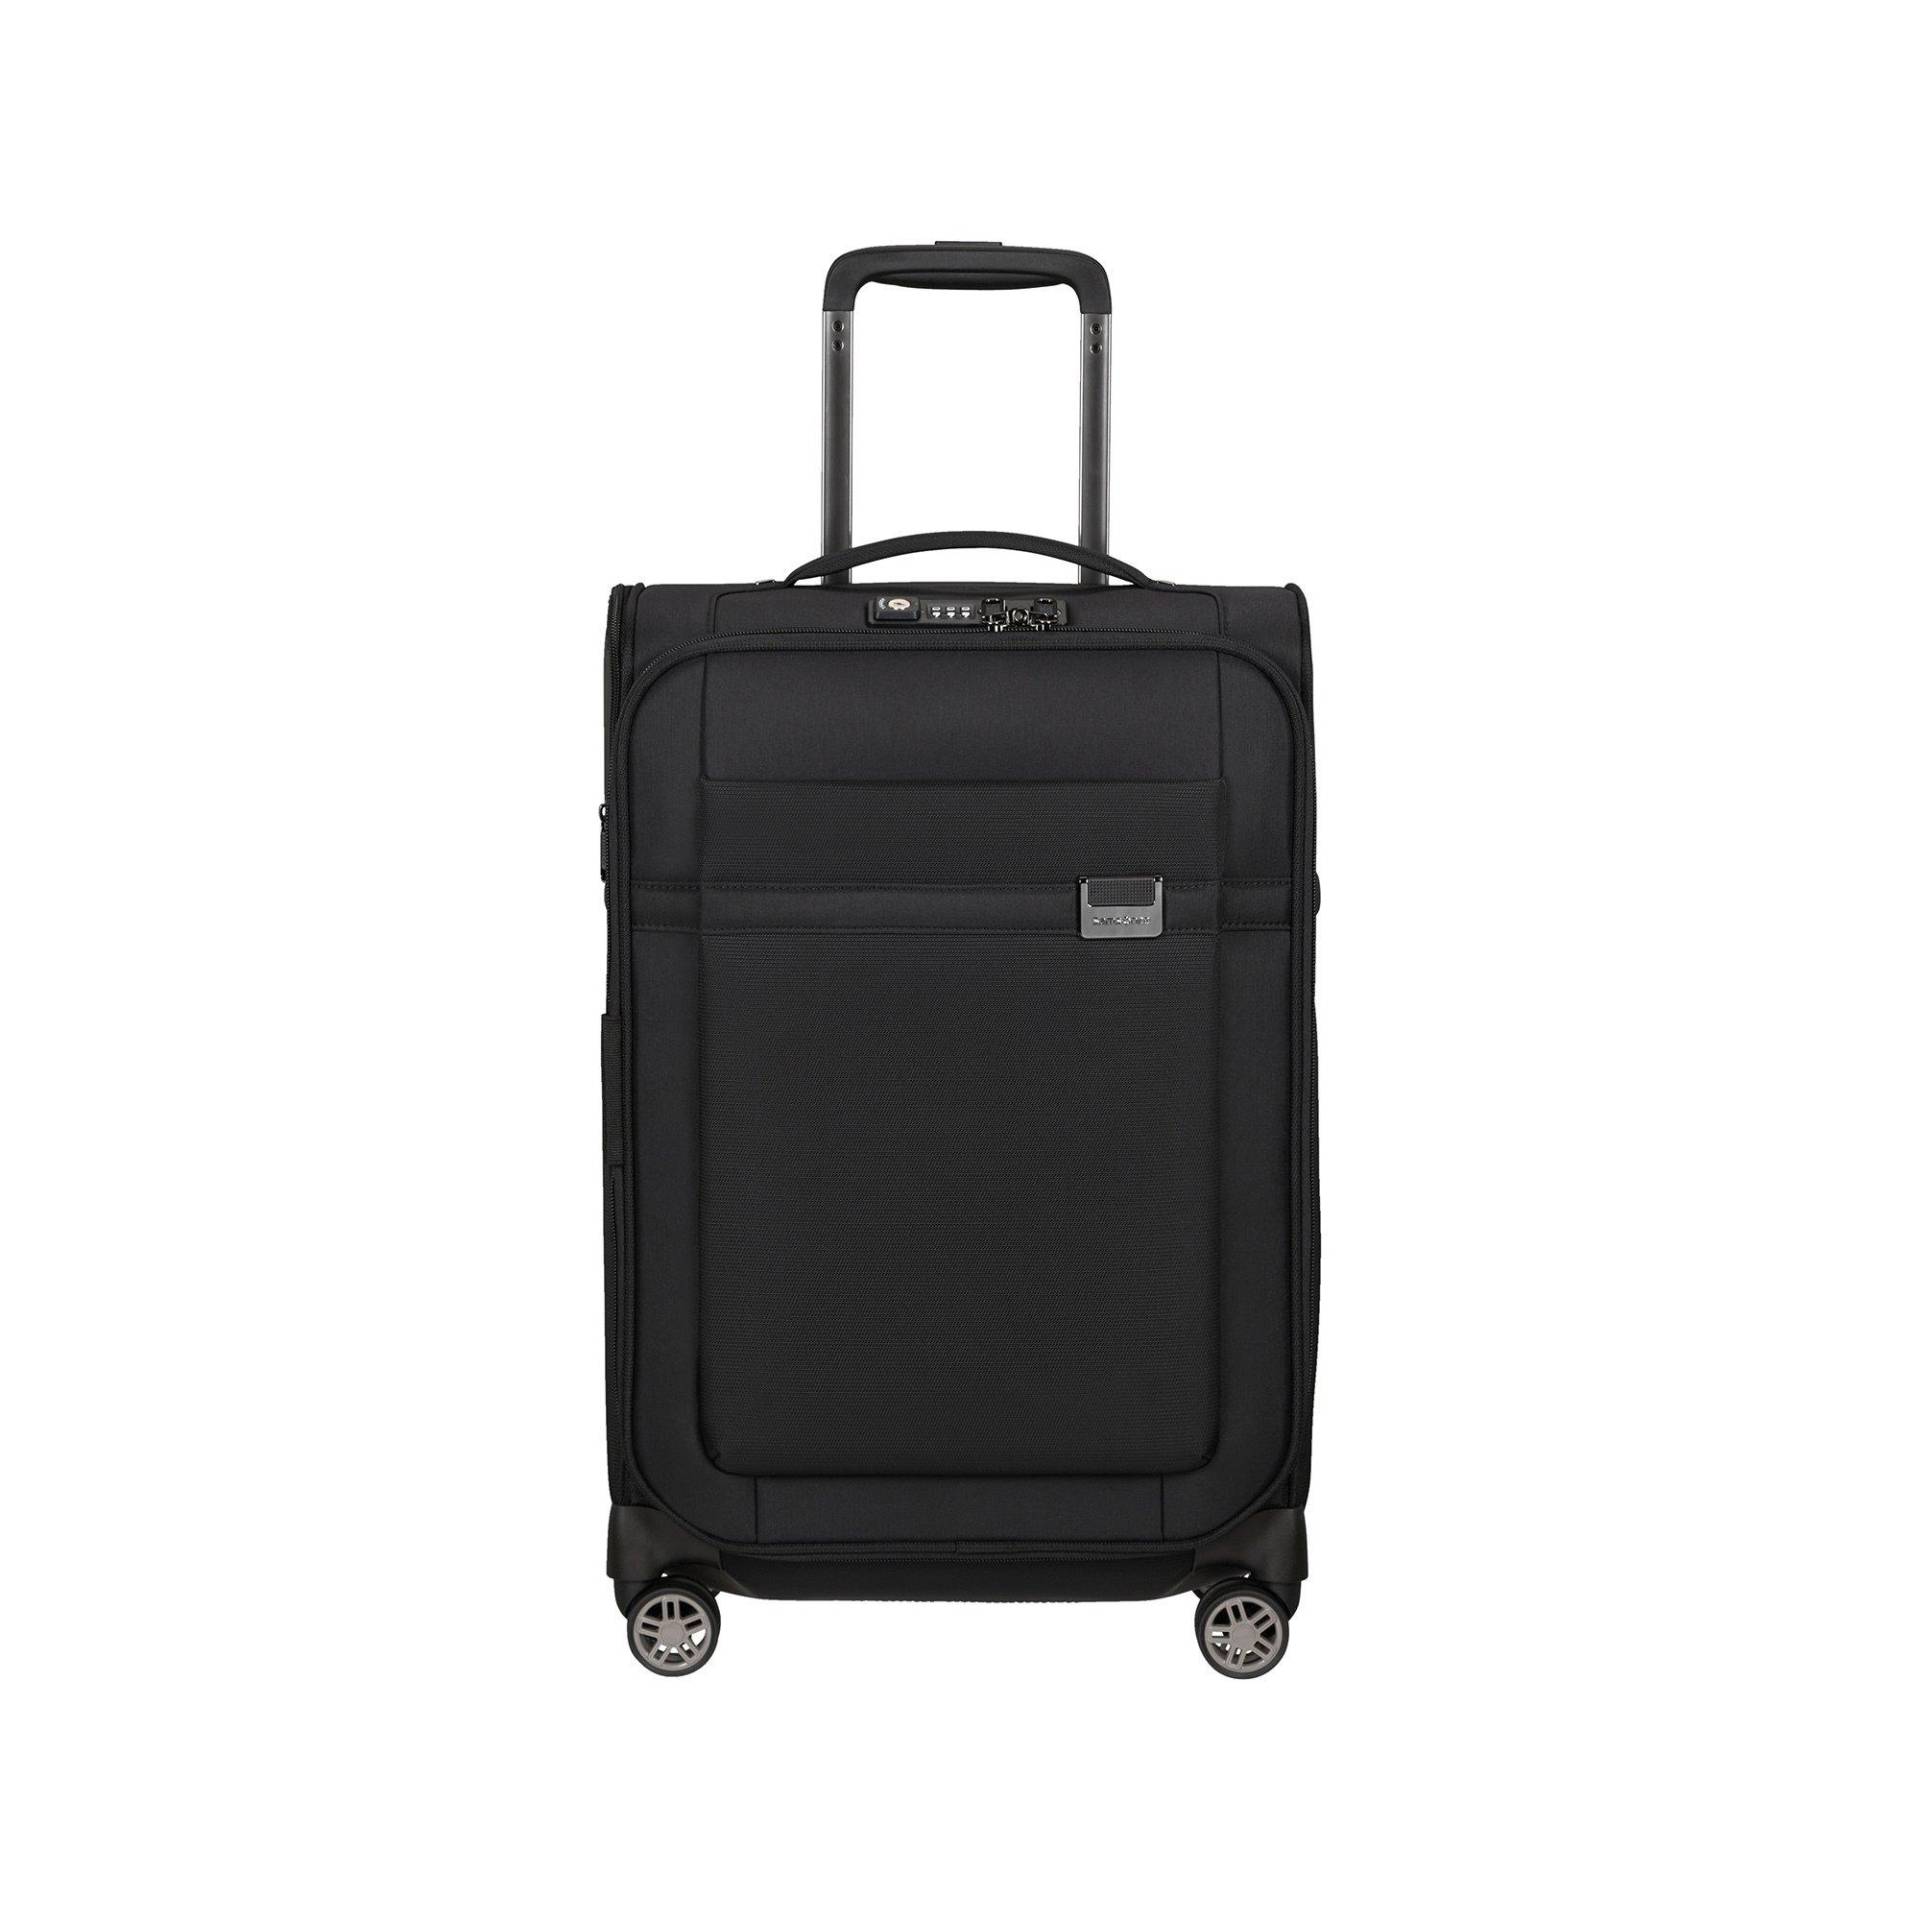 Weich-koffer,sp Unisex Black 55 CM von Samsonite